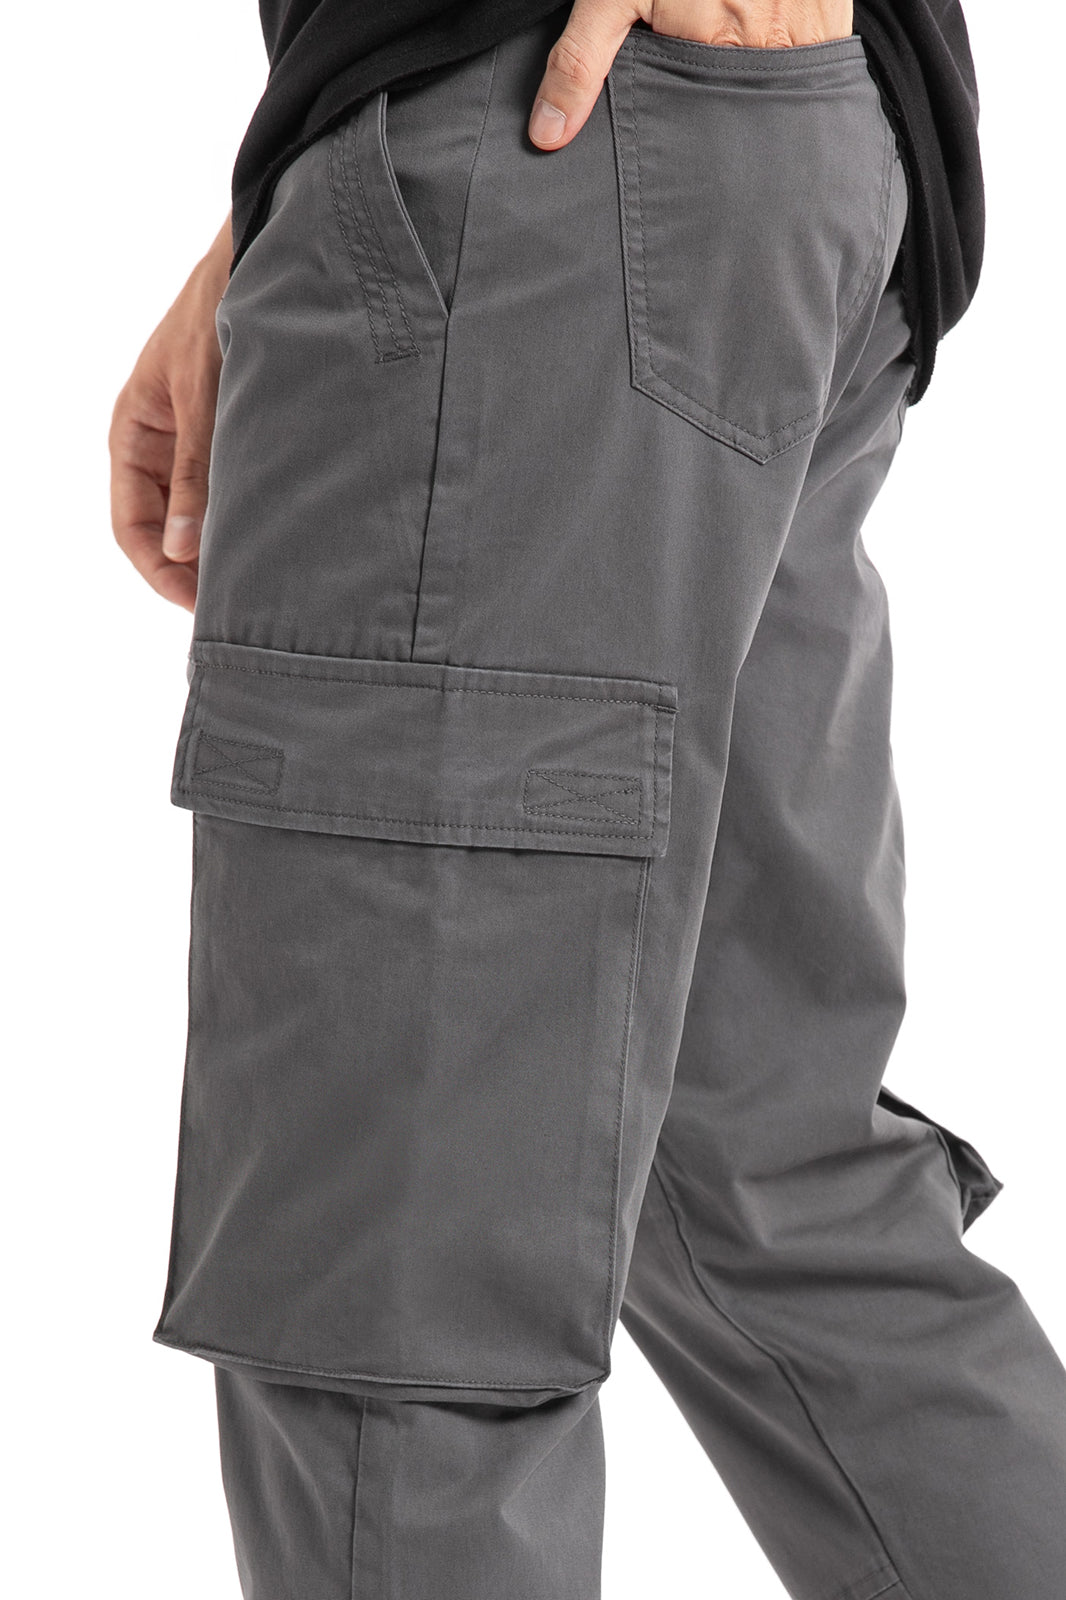 Buy Now Dark Grey Cargo Pants